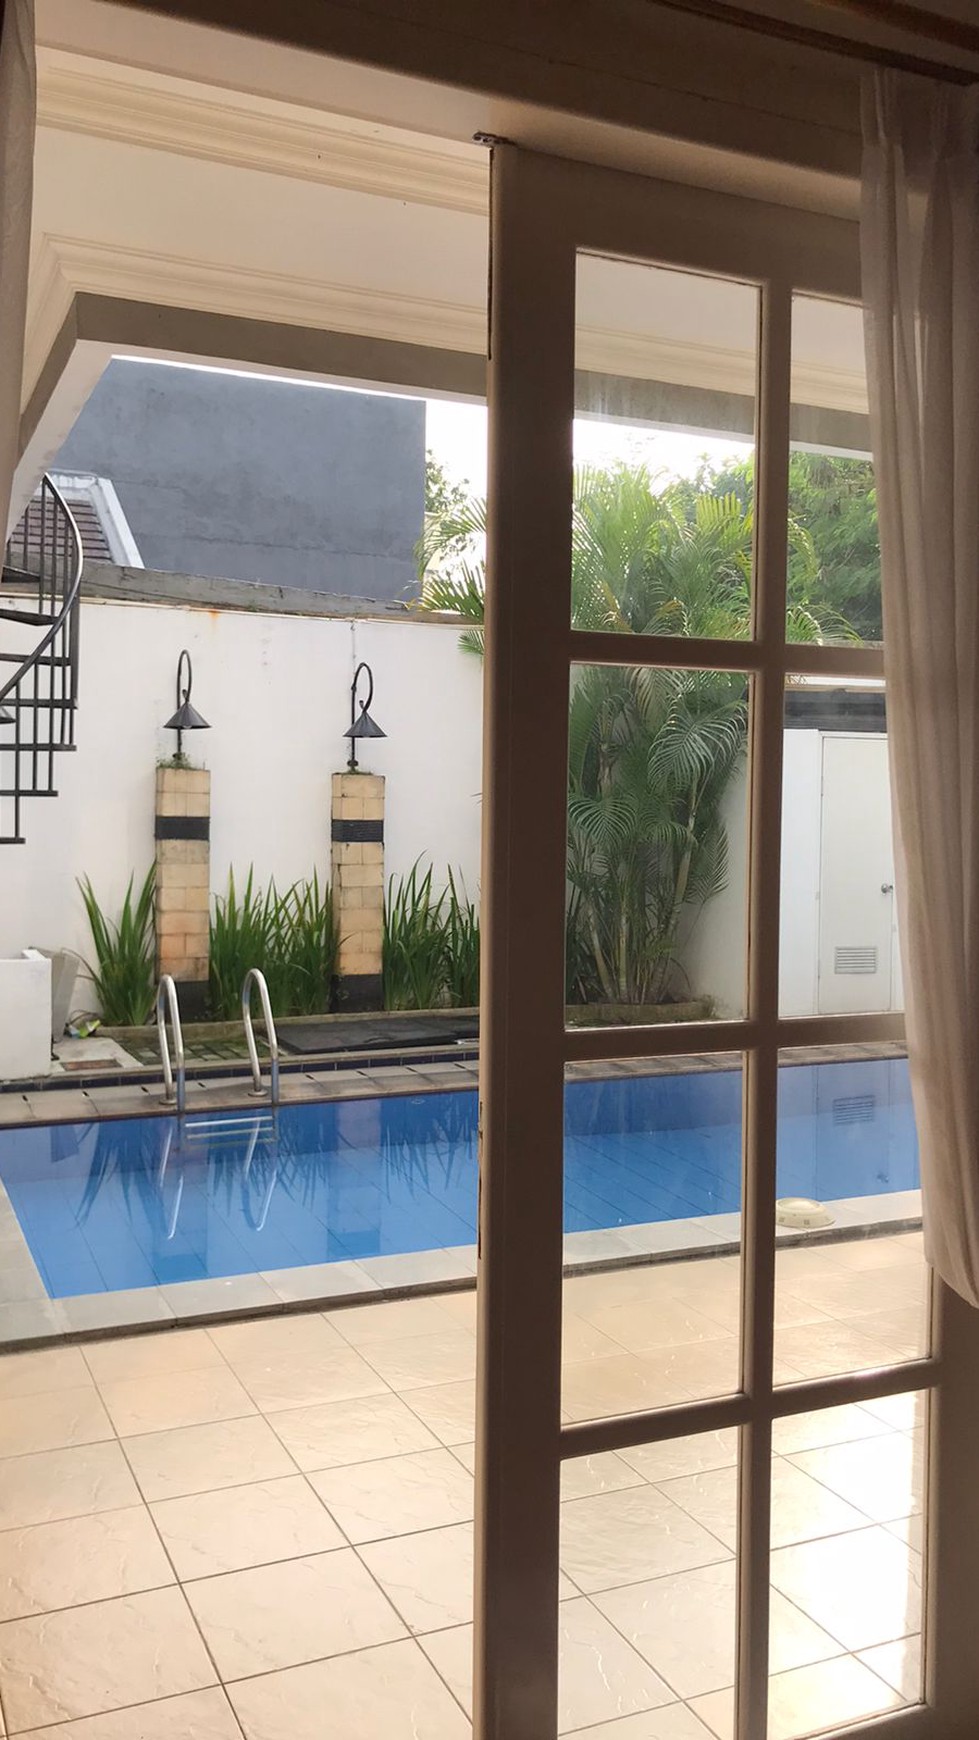 Rumah  2 lantai Siap Huni di Kota Wisata Cibubur ada kolam renang